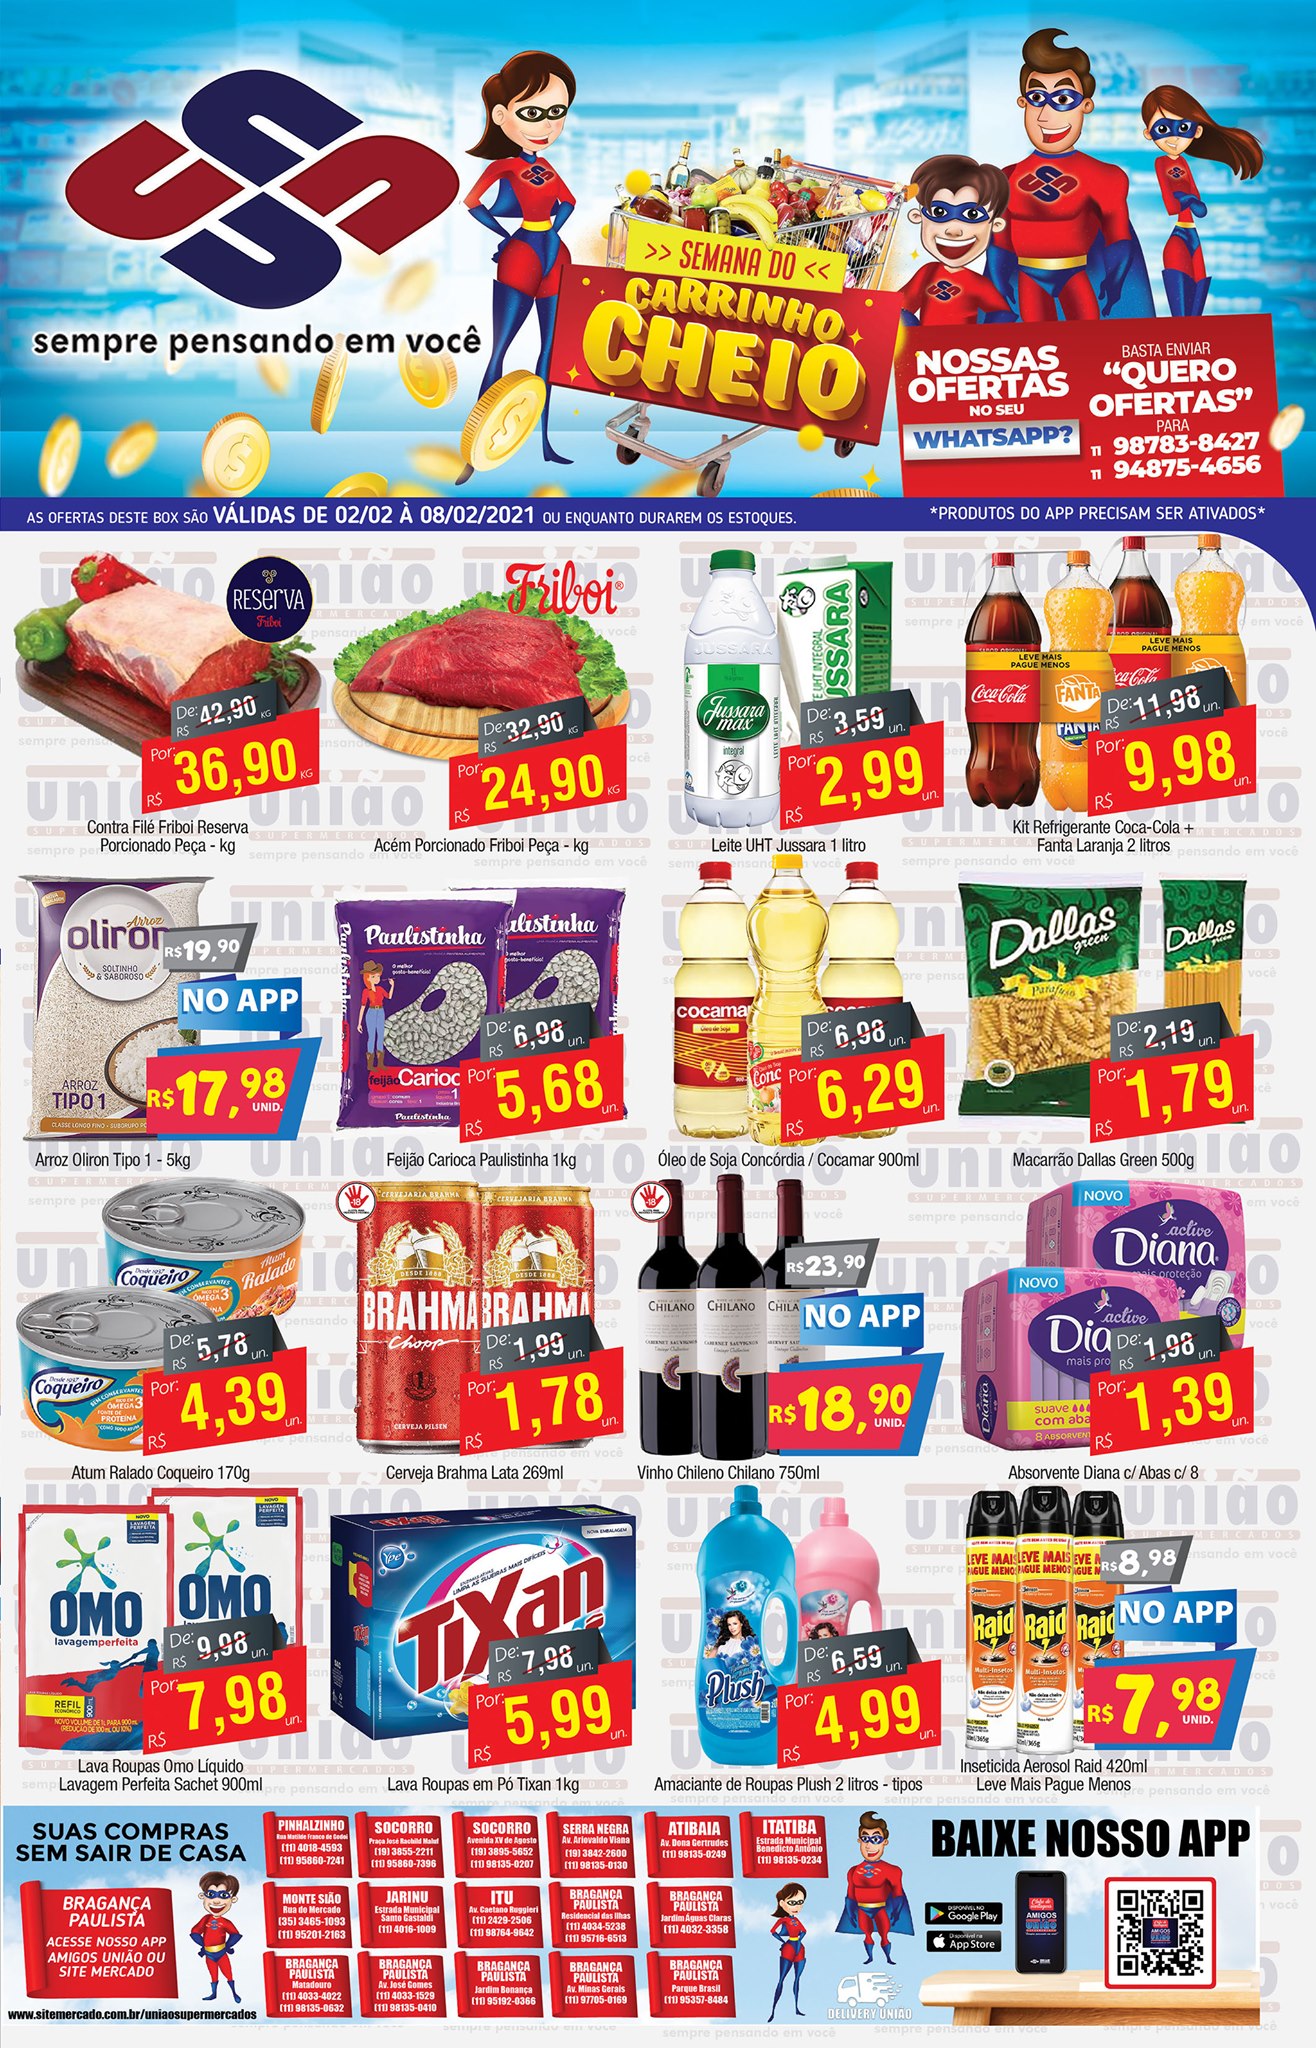 Semana do Carrinho Cheio do União Supermercados tem mais de 80 ofertas